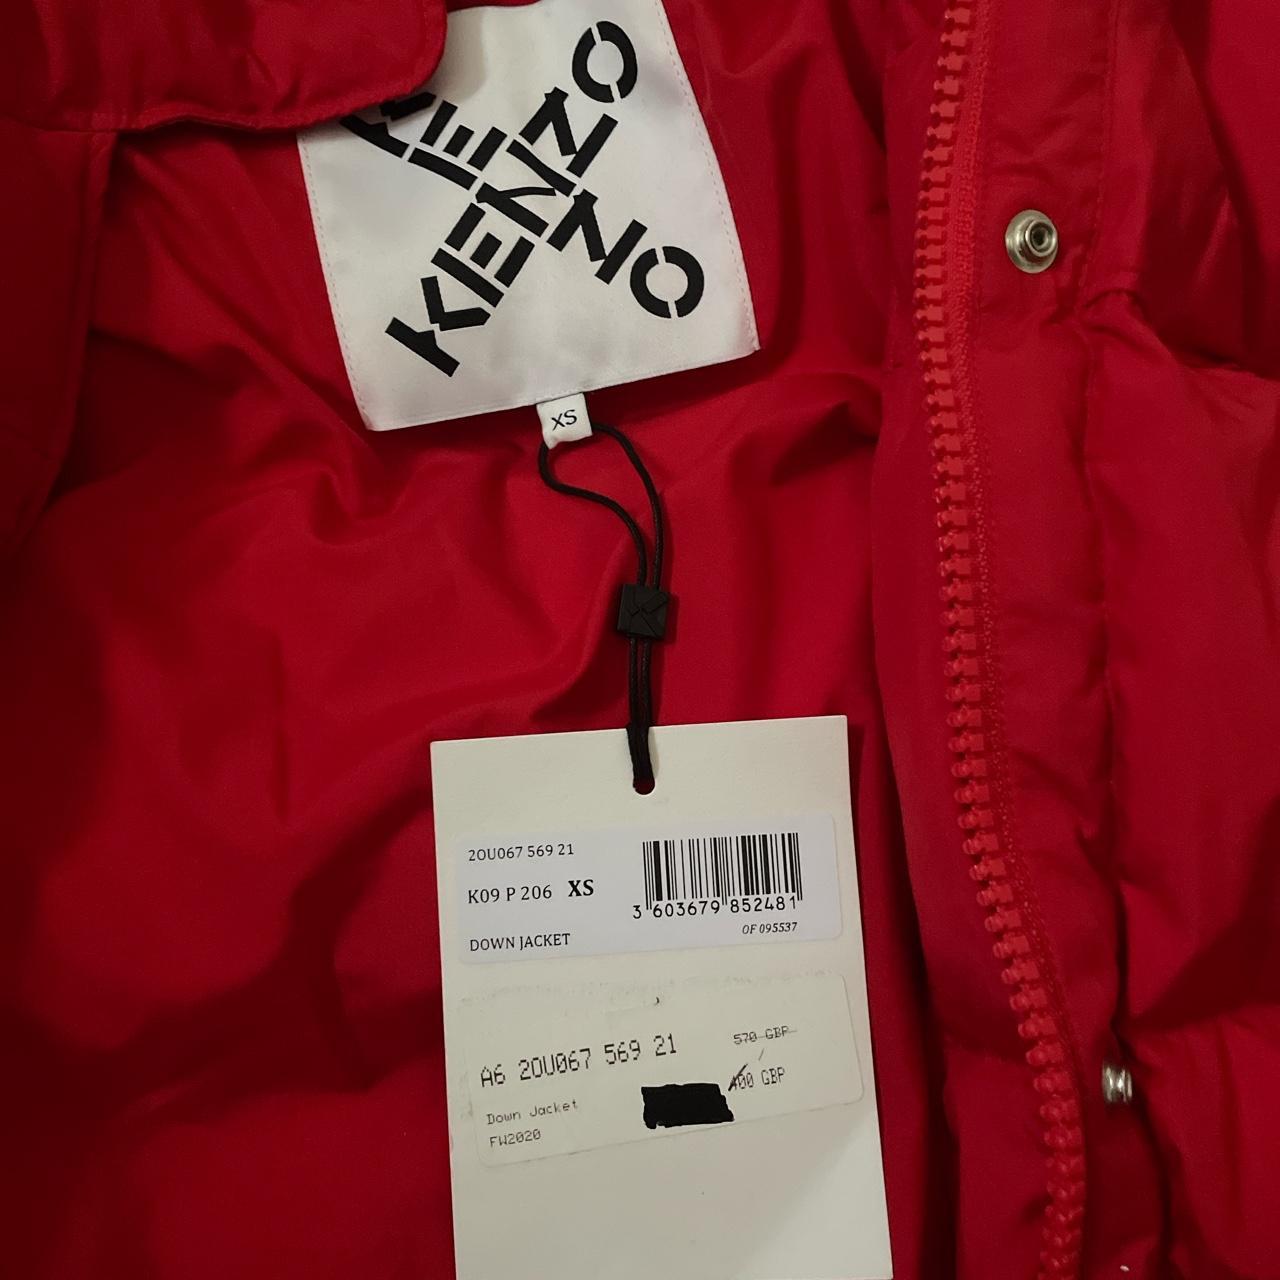 Kenzo Women's Red Jacket | Depop